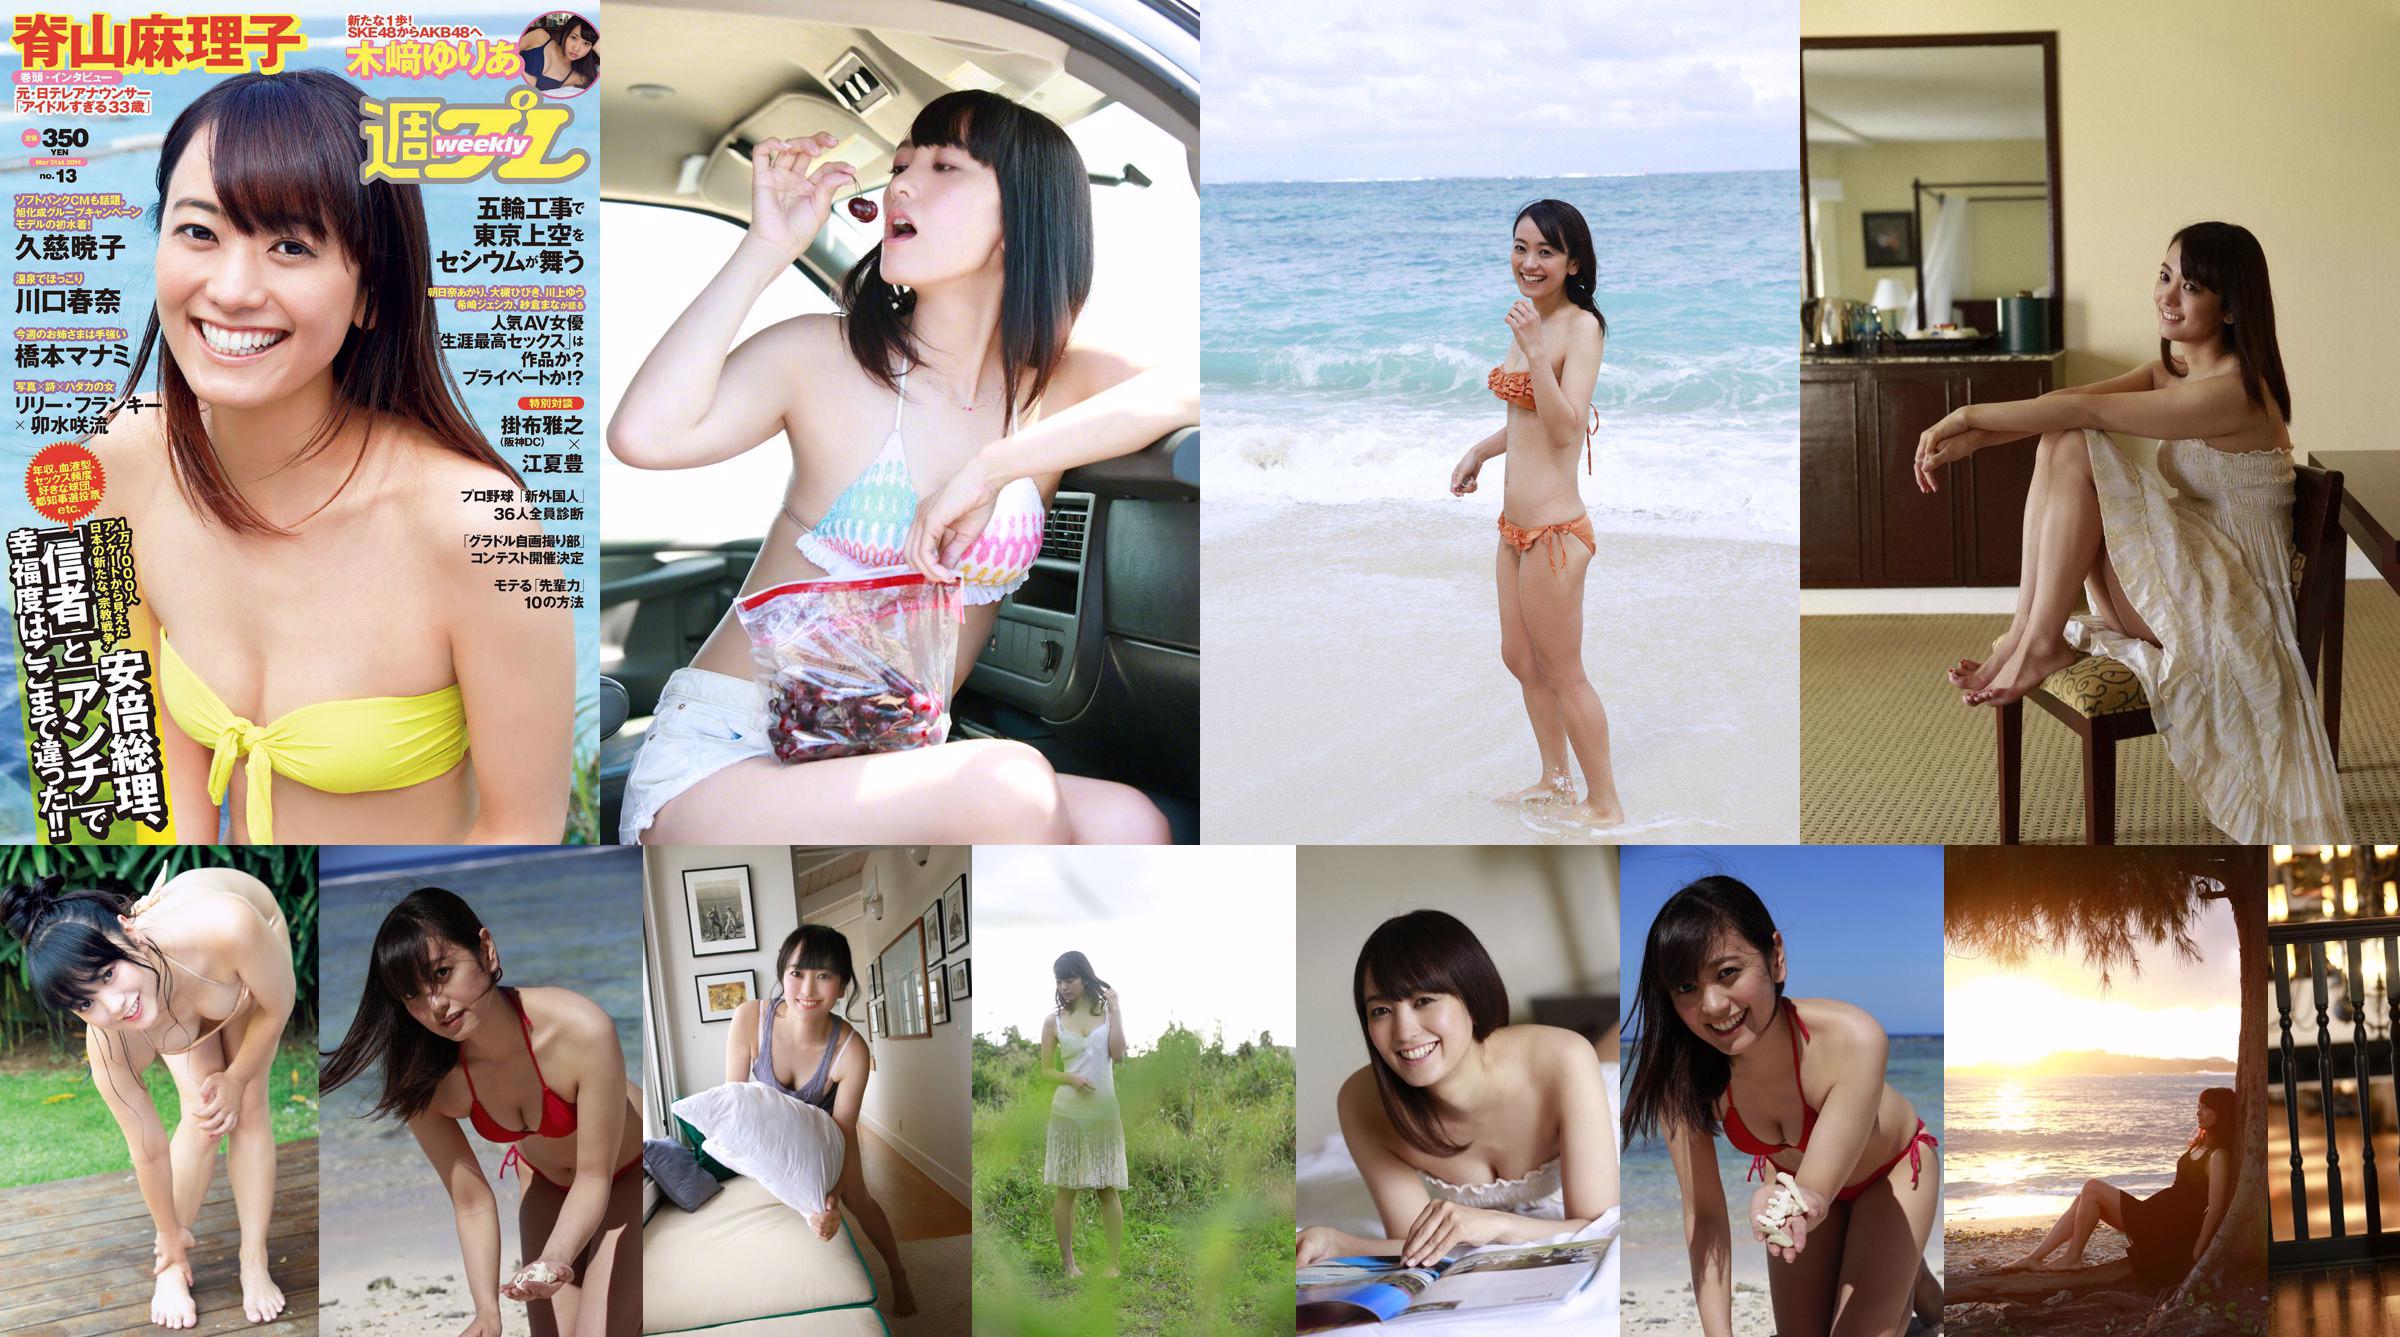 [JUMAT] Mariko Seyama "Joshiana mencari foto Eros" No.2cd5b0 Halaman 1